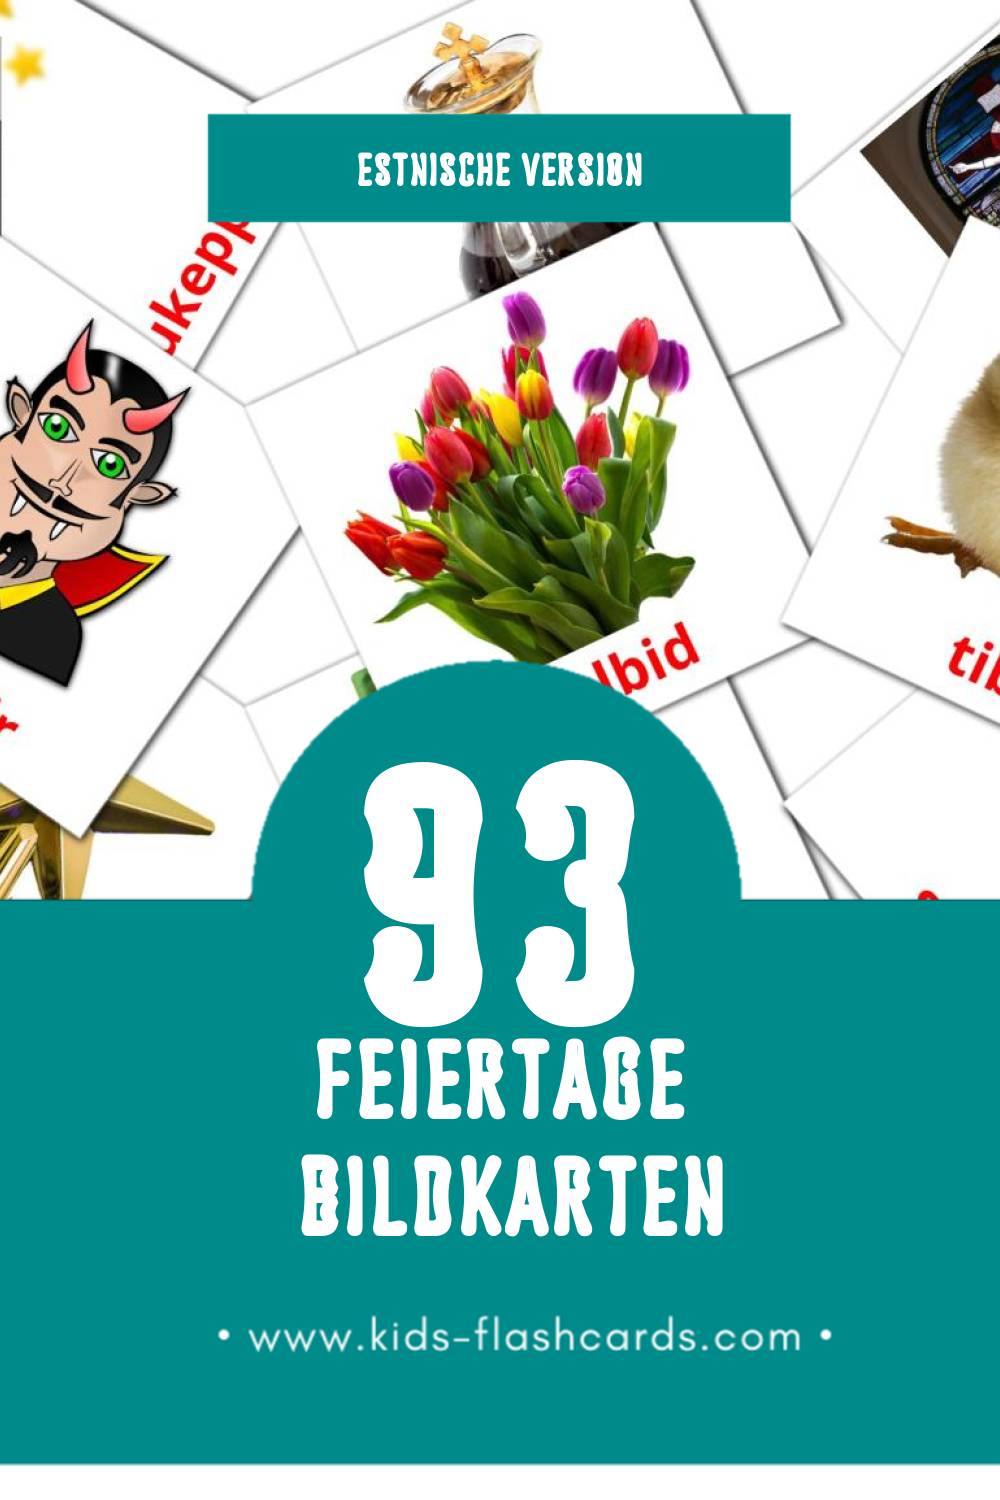 Visual pühad Flashcards für Kleinkinder (93 Karten in Estnisch)